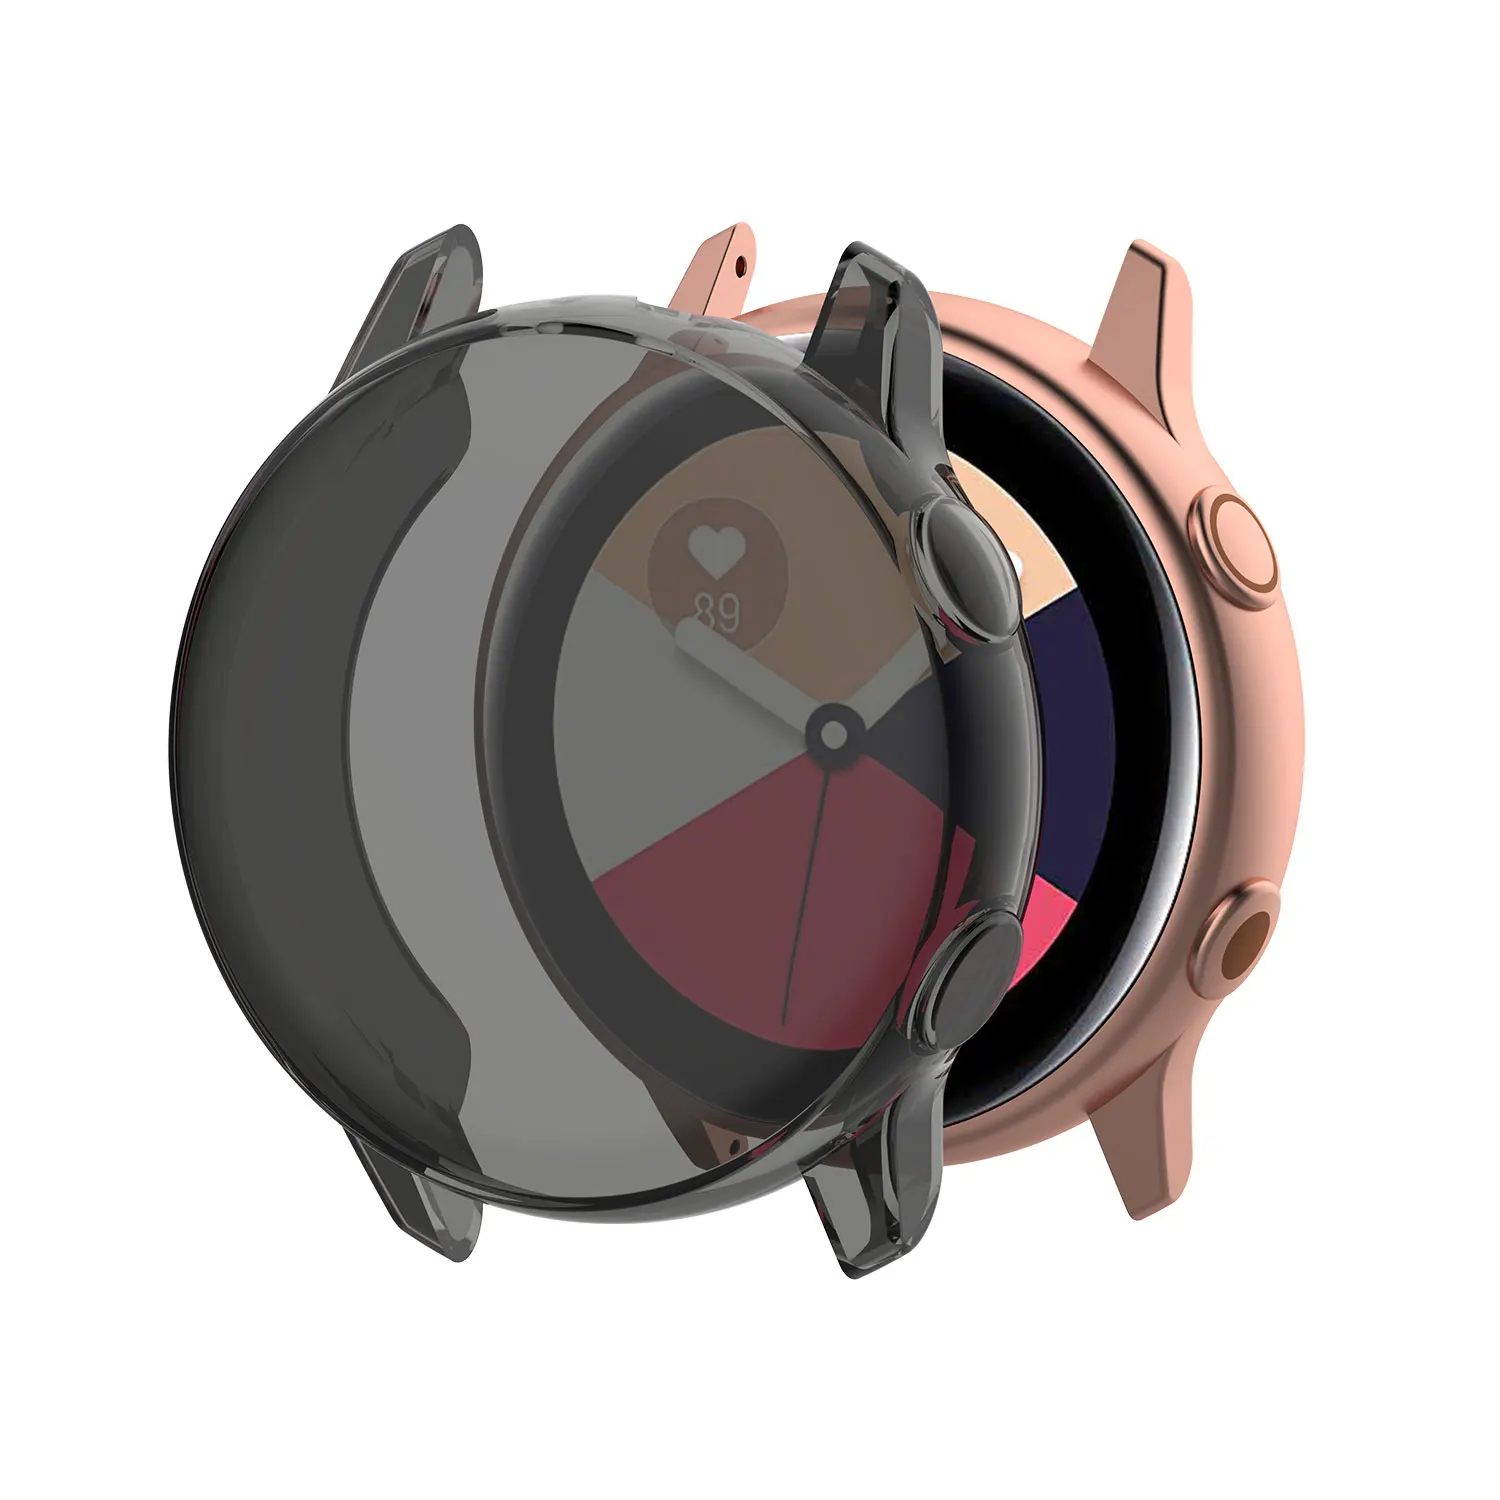 Чехол для часов samsung galaxy Watch active/R500, чехол, покрытие, цветной прозрачный мягкий ТПУ Пластиковый защитный чехол - Цвет: Transparent Black